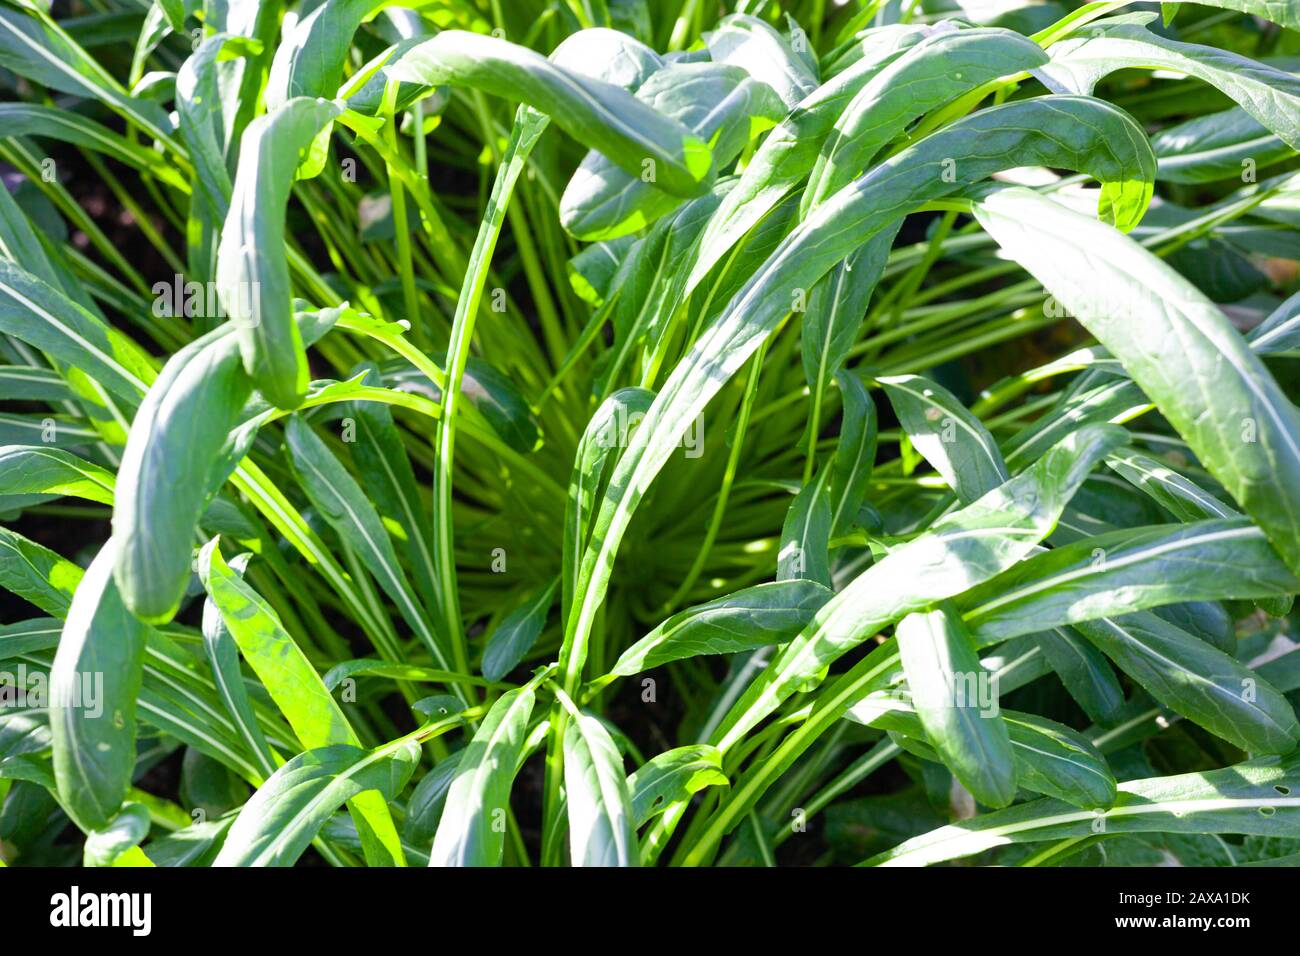 Close-up of rich-green foliage of Mibuna Stock Photo